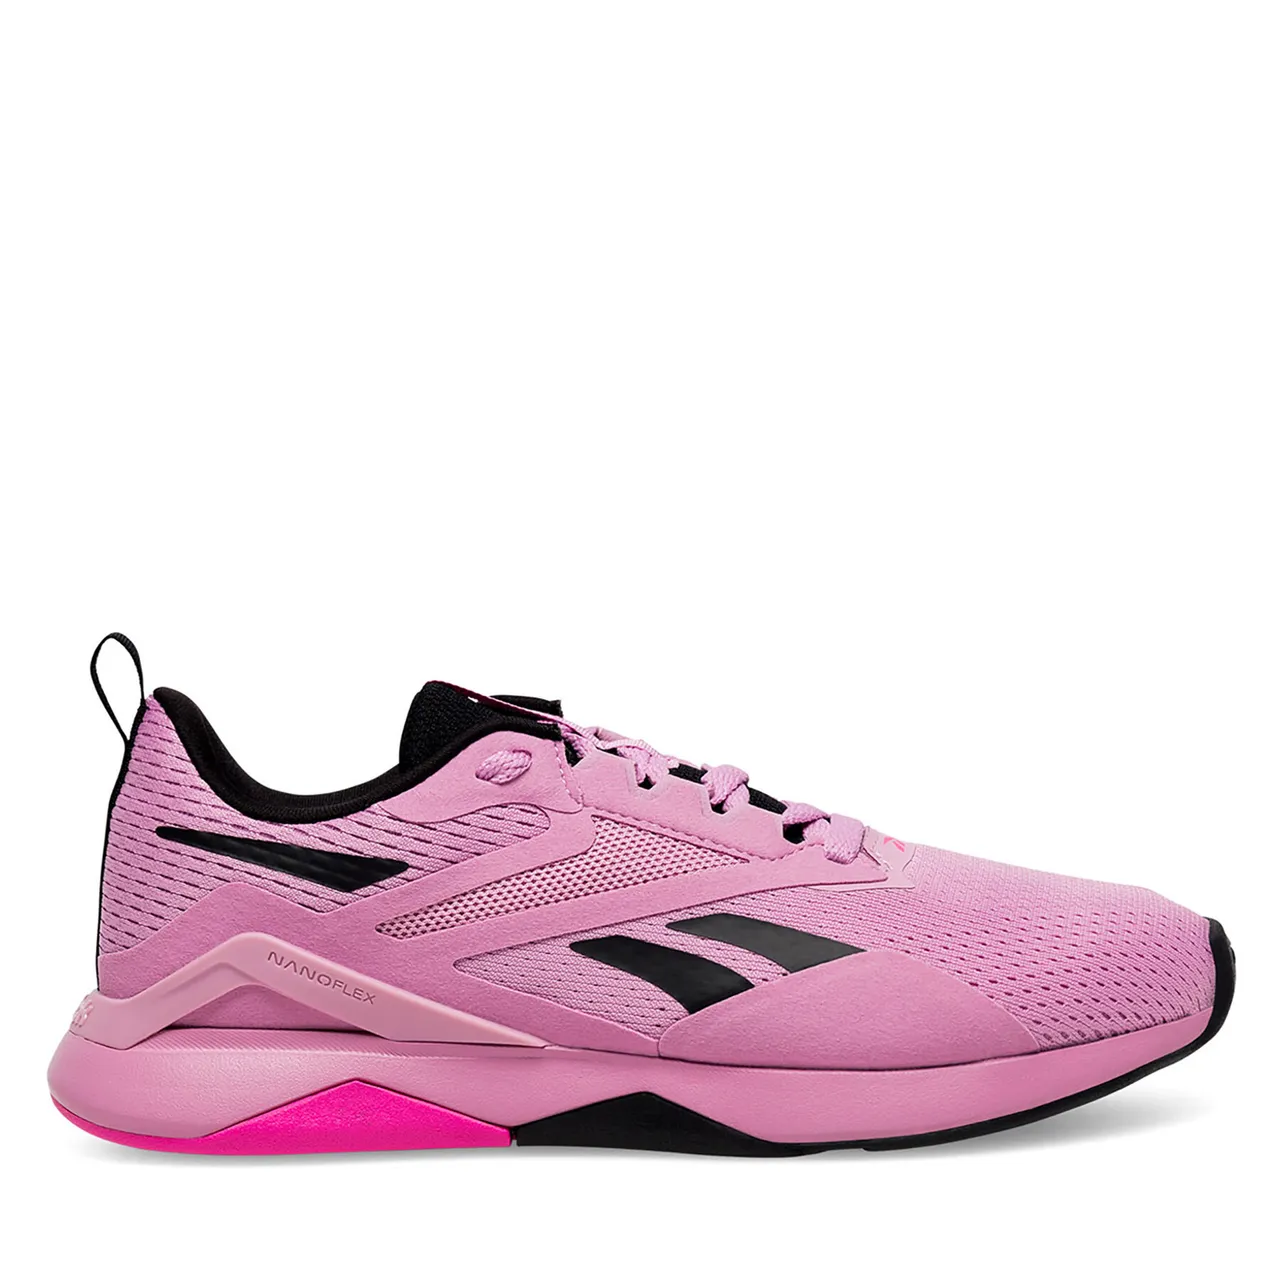 Schuhe Reebok Nanoflex Tr 2 100074541 Pink